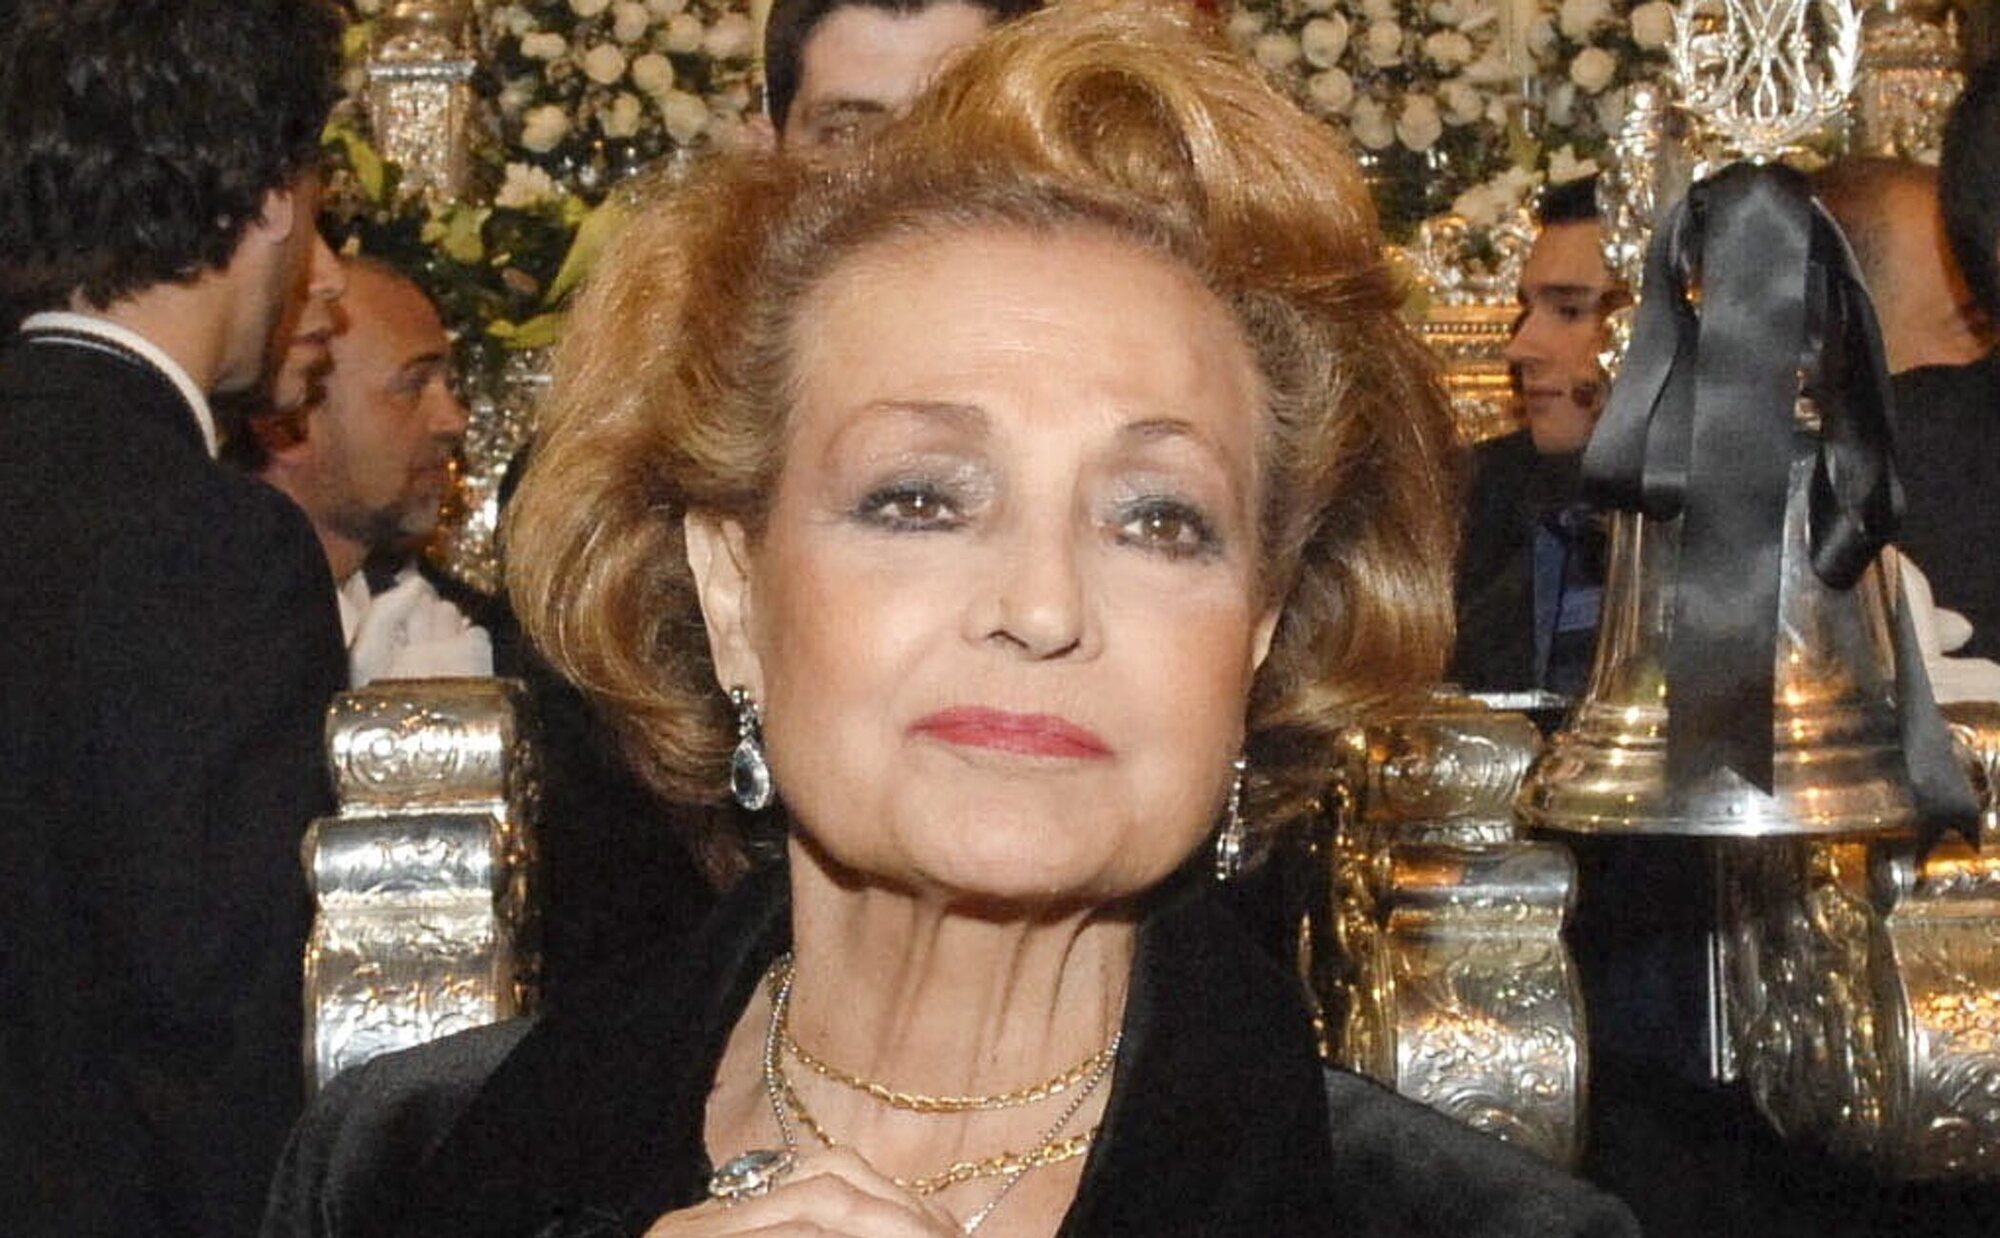 Muere Carmen Sevilla a los 92 años